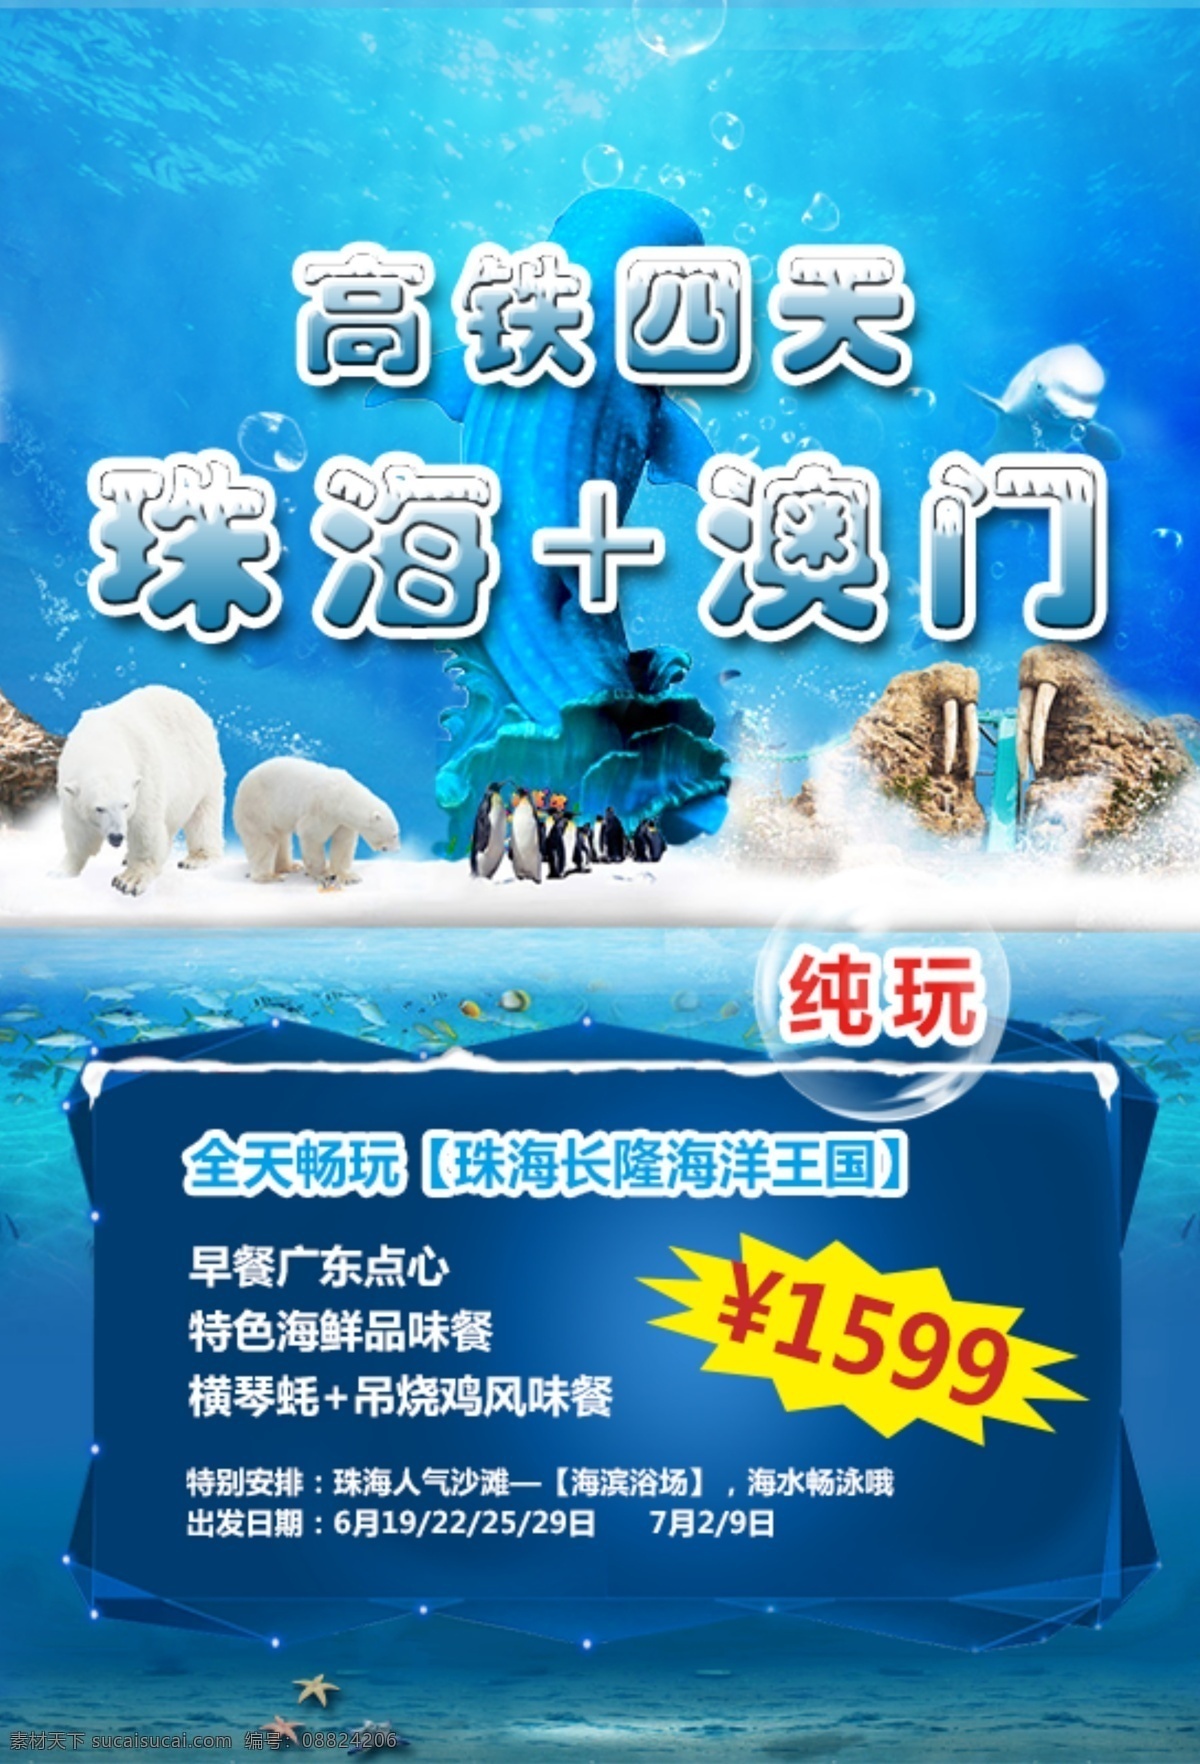 珠海长隆广告 海洋王国 珠海长隆 旅游广告 微信广告 原创设计